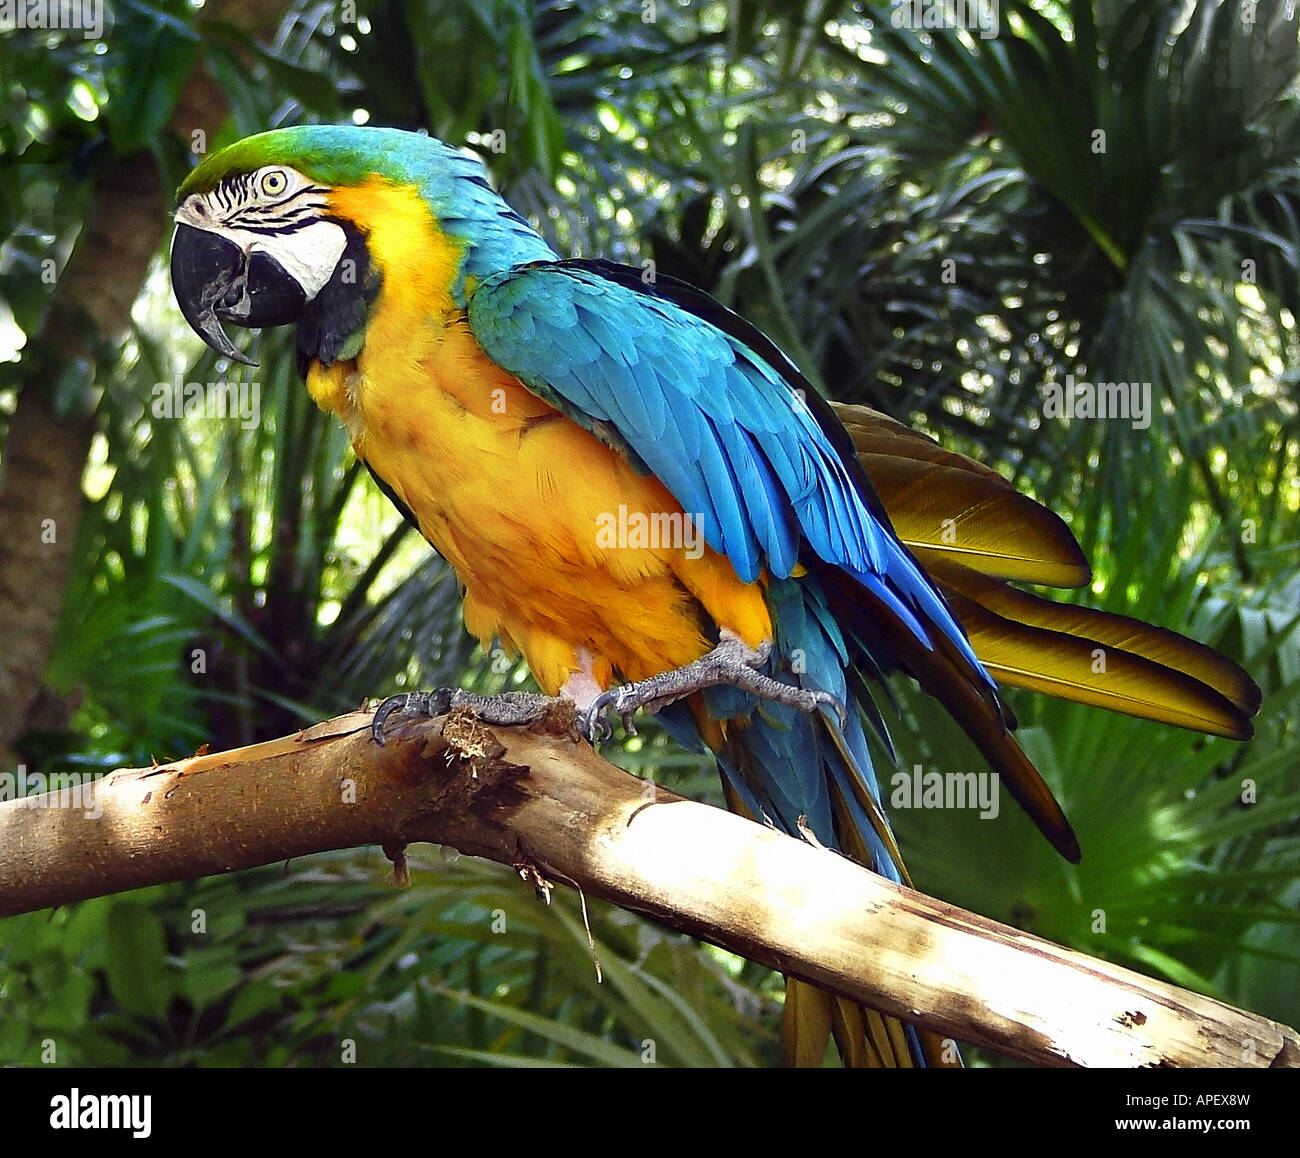 Papagei, bunt, thront auf Zweig, Blick auf Betrachter seitwärts, Ganzkörper, mit Dschungel-ähnlichen Hintergrund. Stockfoto